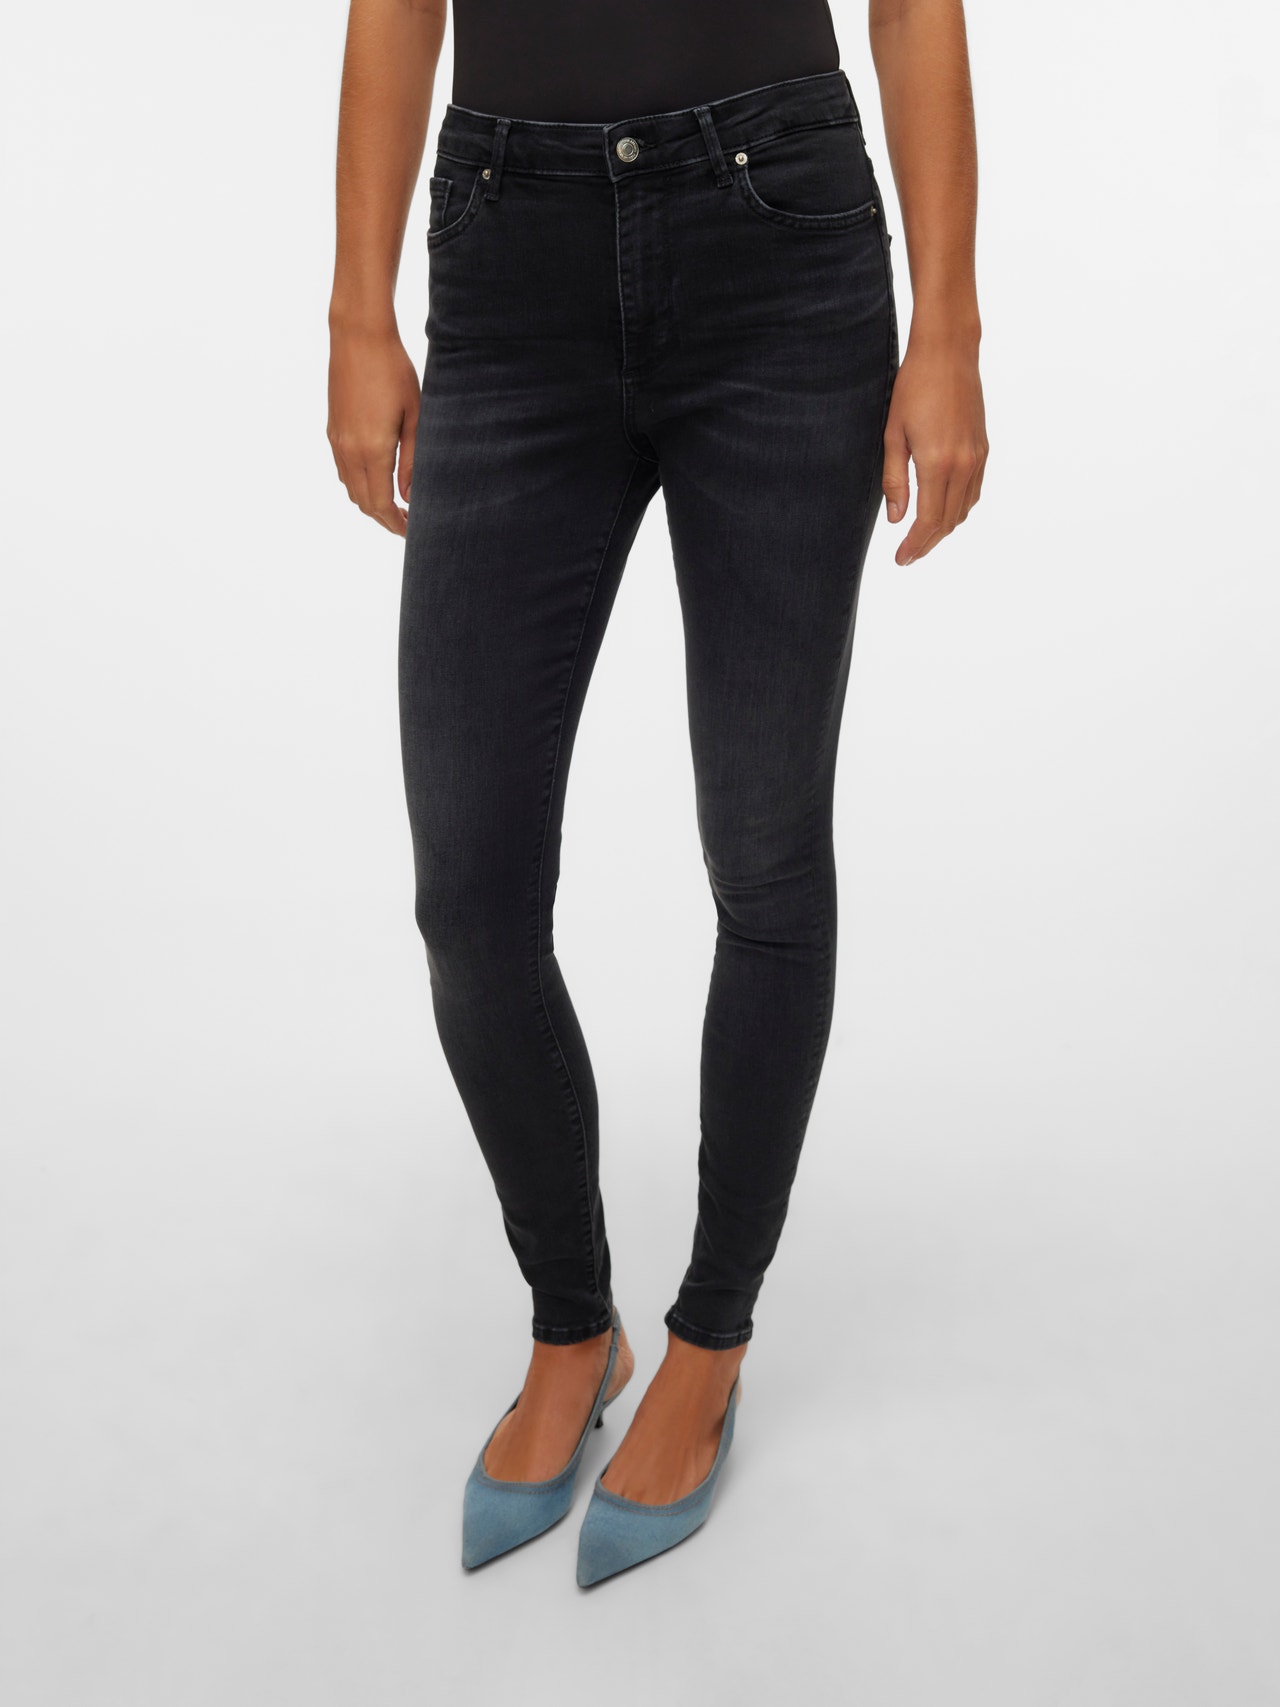 Vero Moda VMSOPHIA Høj talje Skinny fit Jeans -Black Denim - 10311183